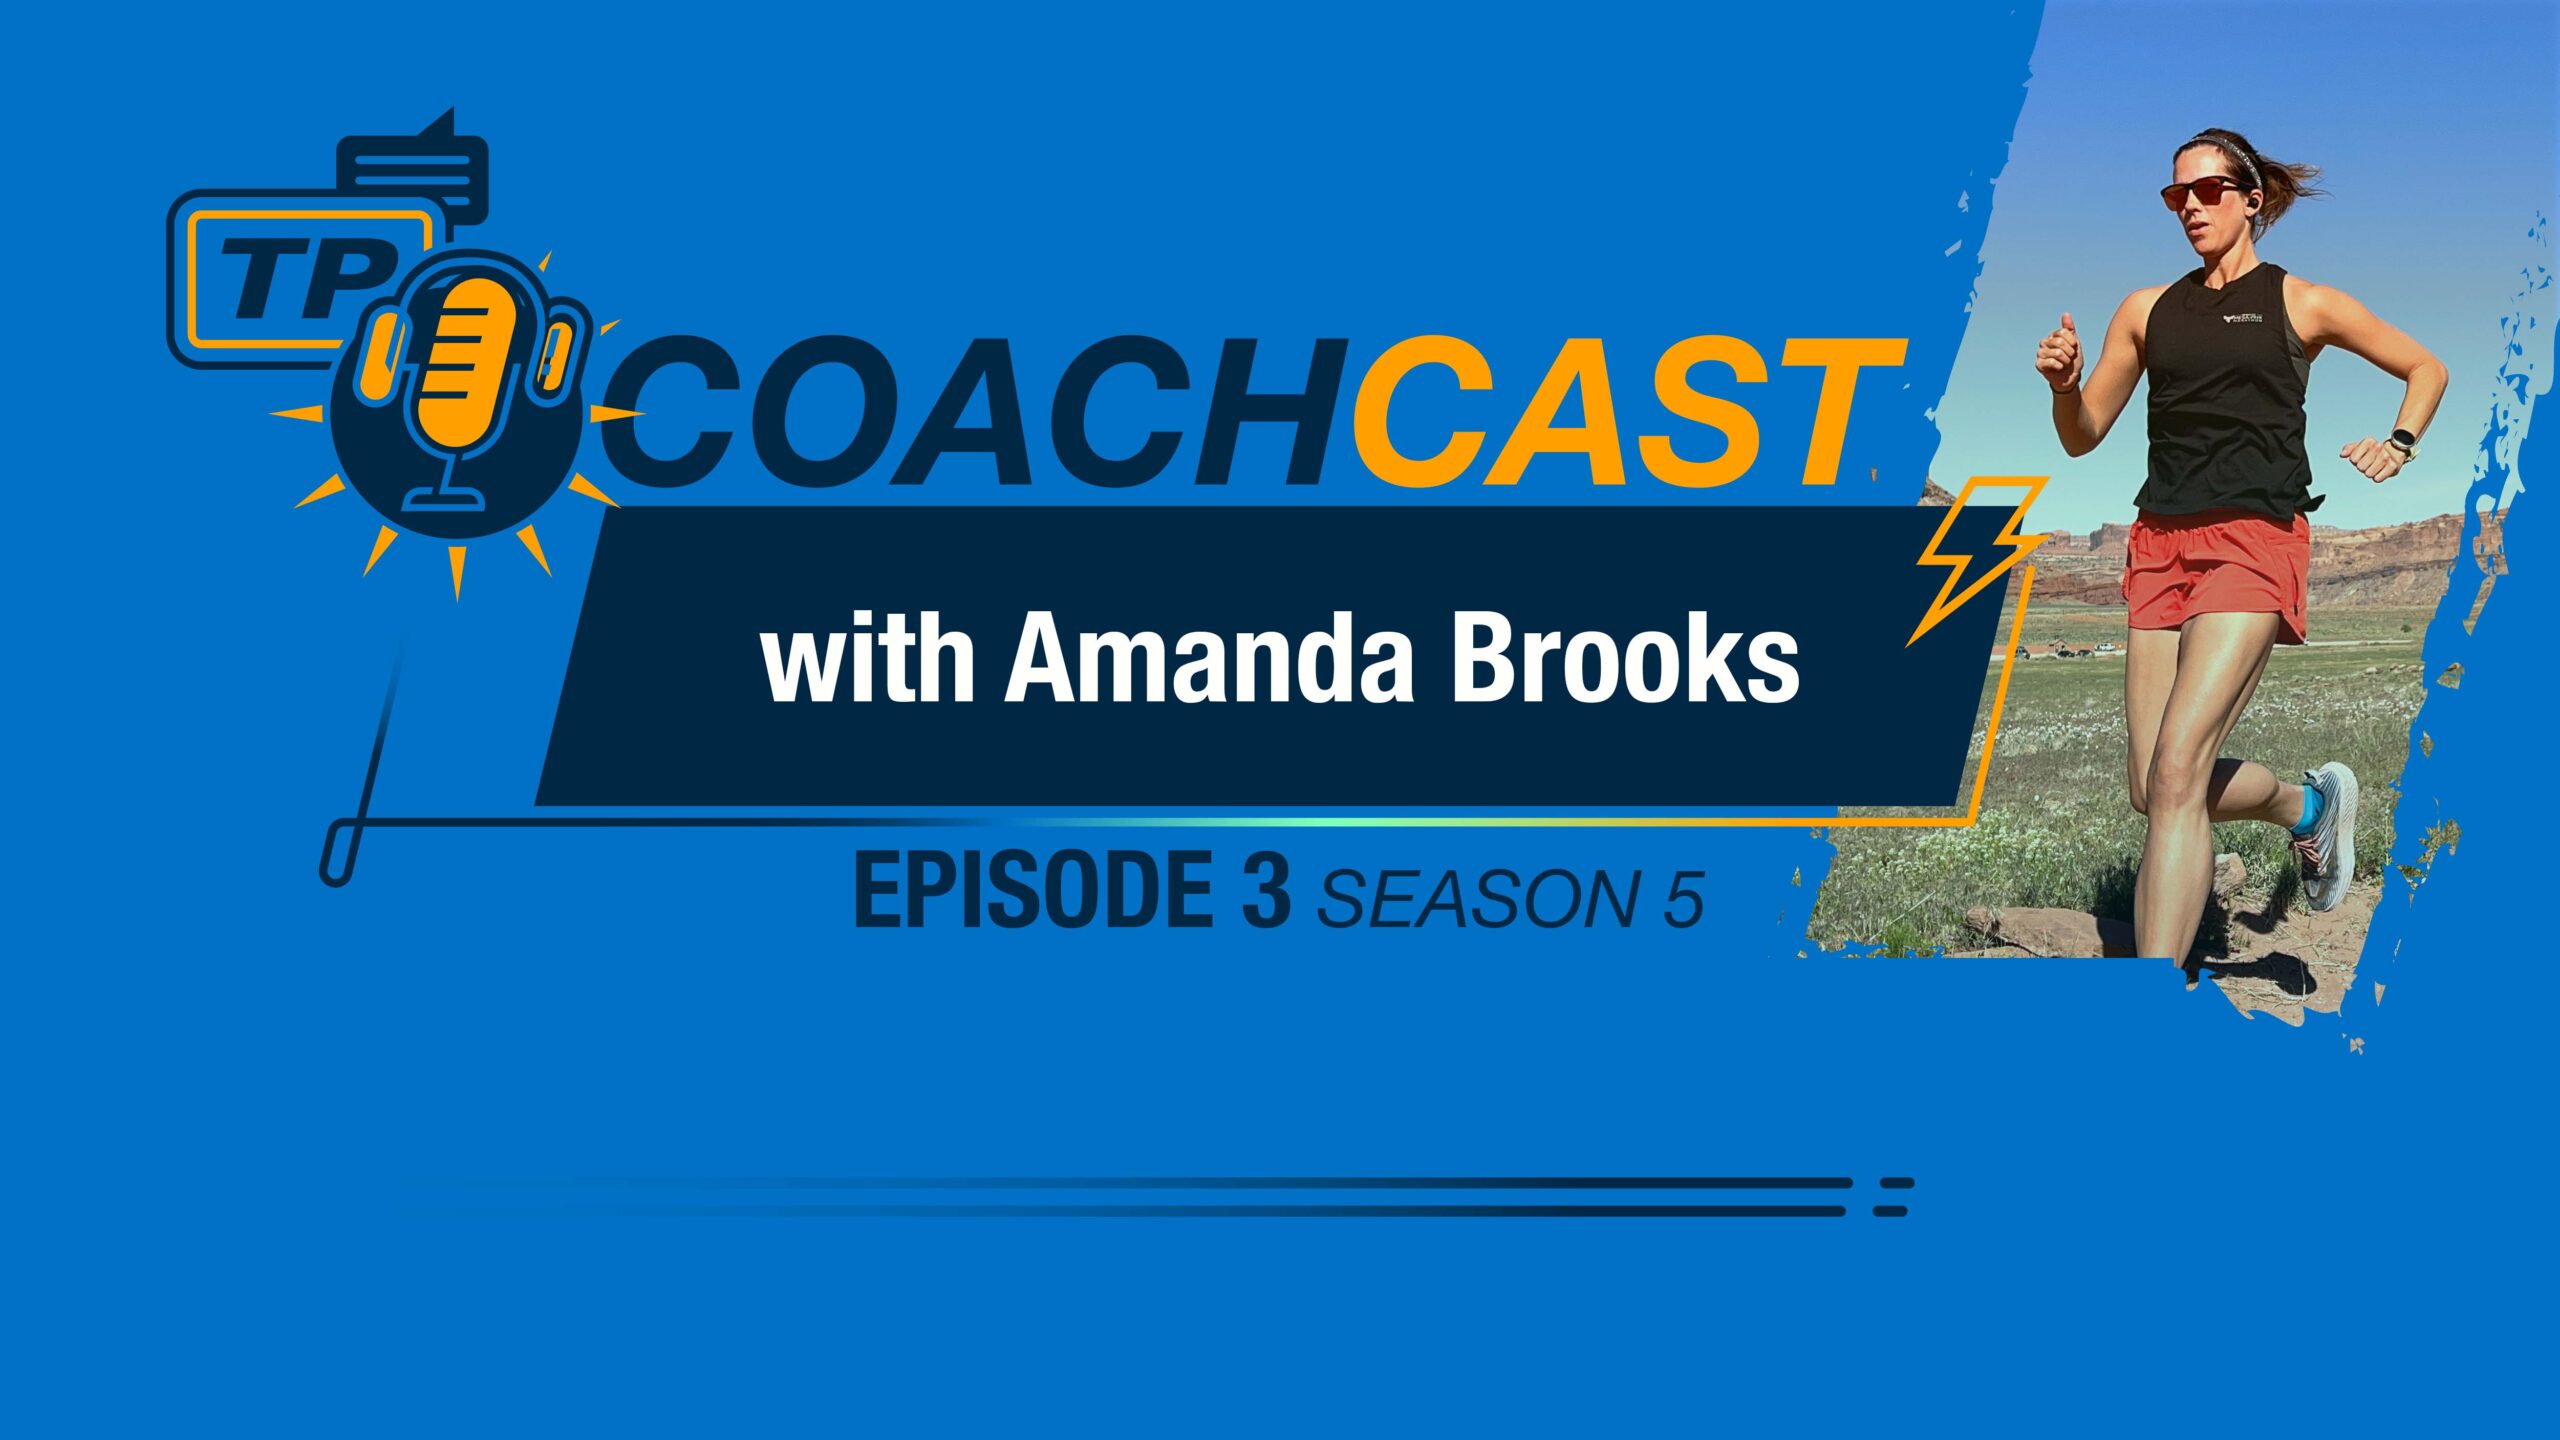 Coachcast Image With Amanda Brooks